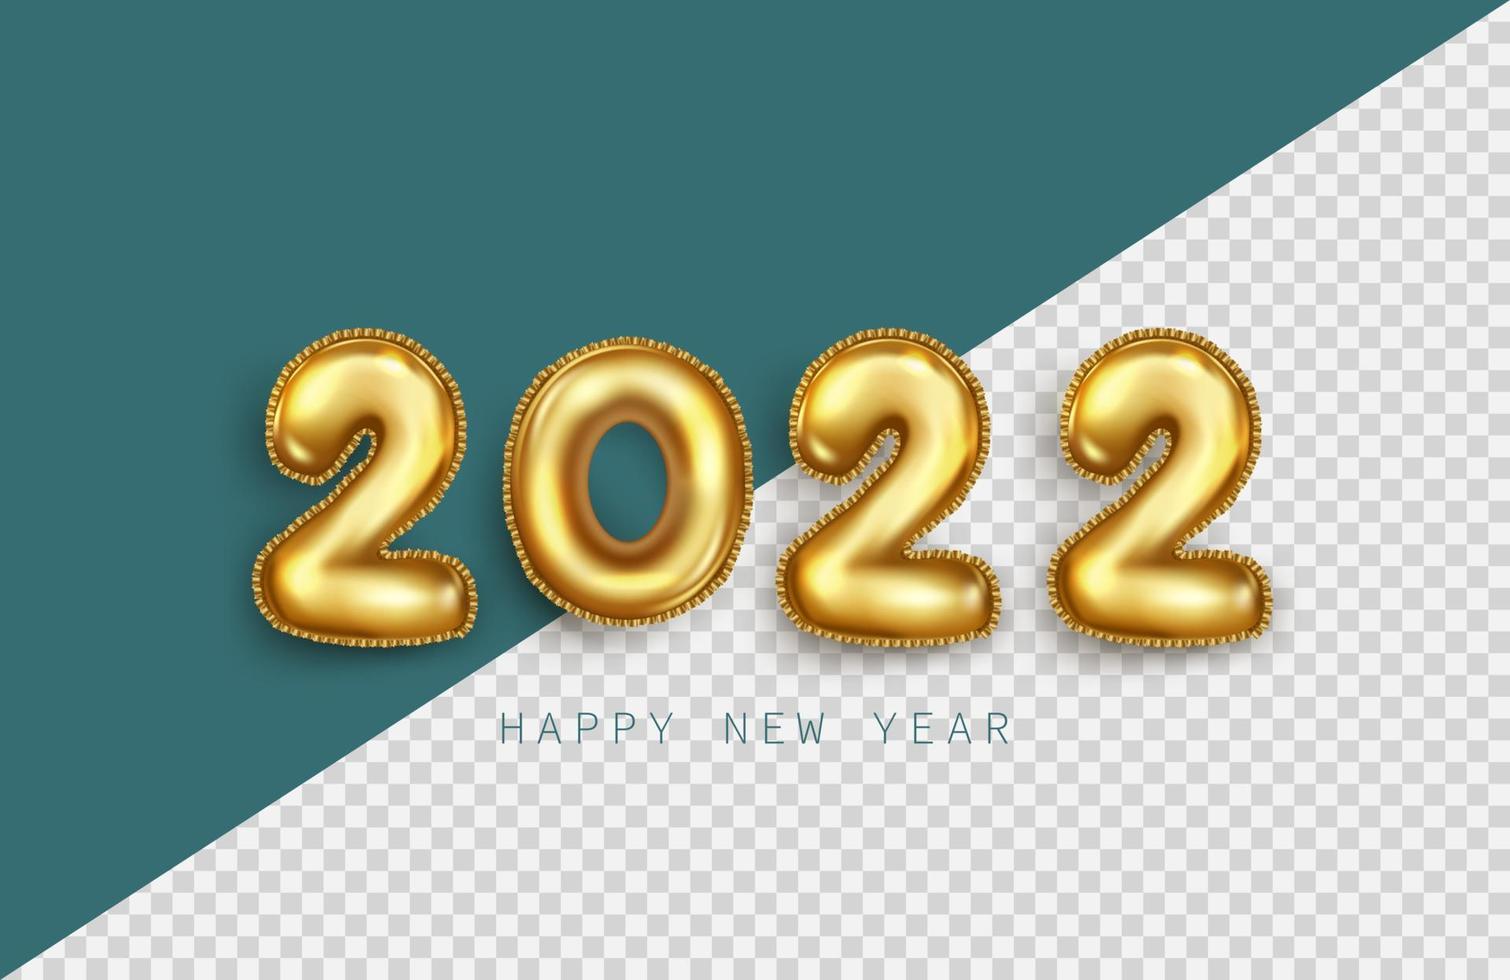 feliz ano novo 2022. números metálicos dourados 2022 em sinal 3d realista no fundo transparente. ilustração vetorial de elementos de férias para banner, cartaz e design vetor